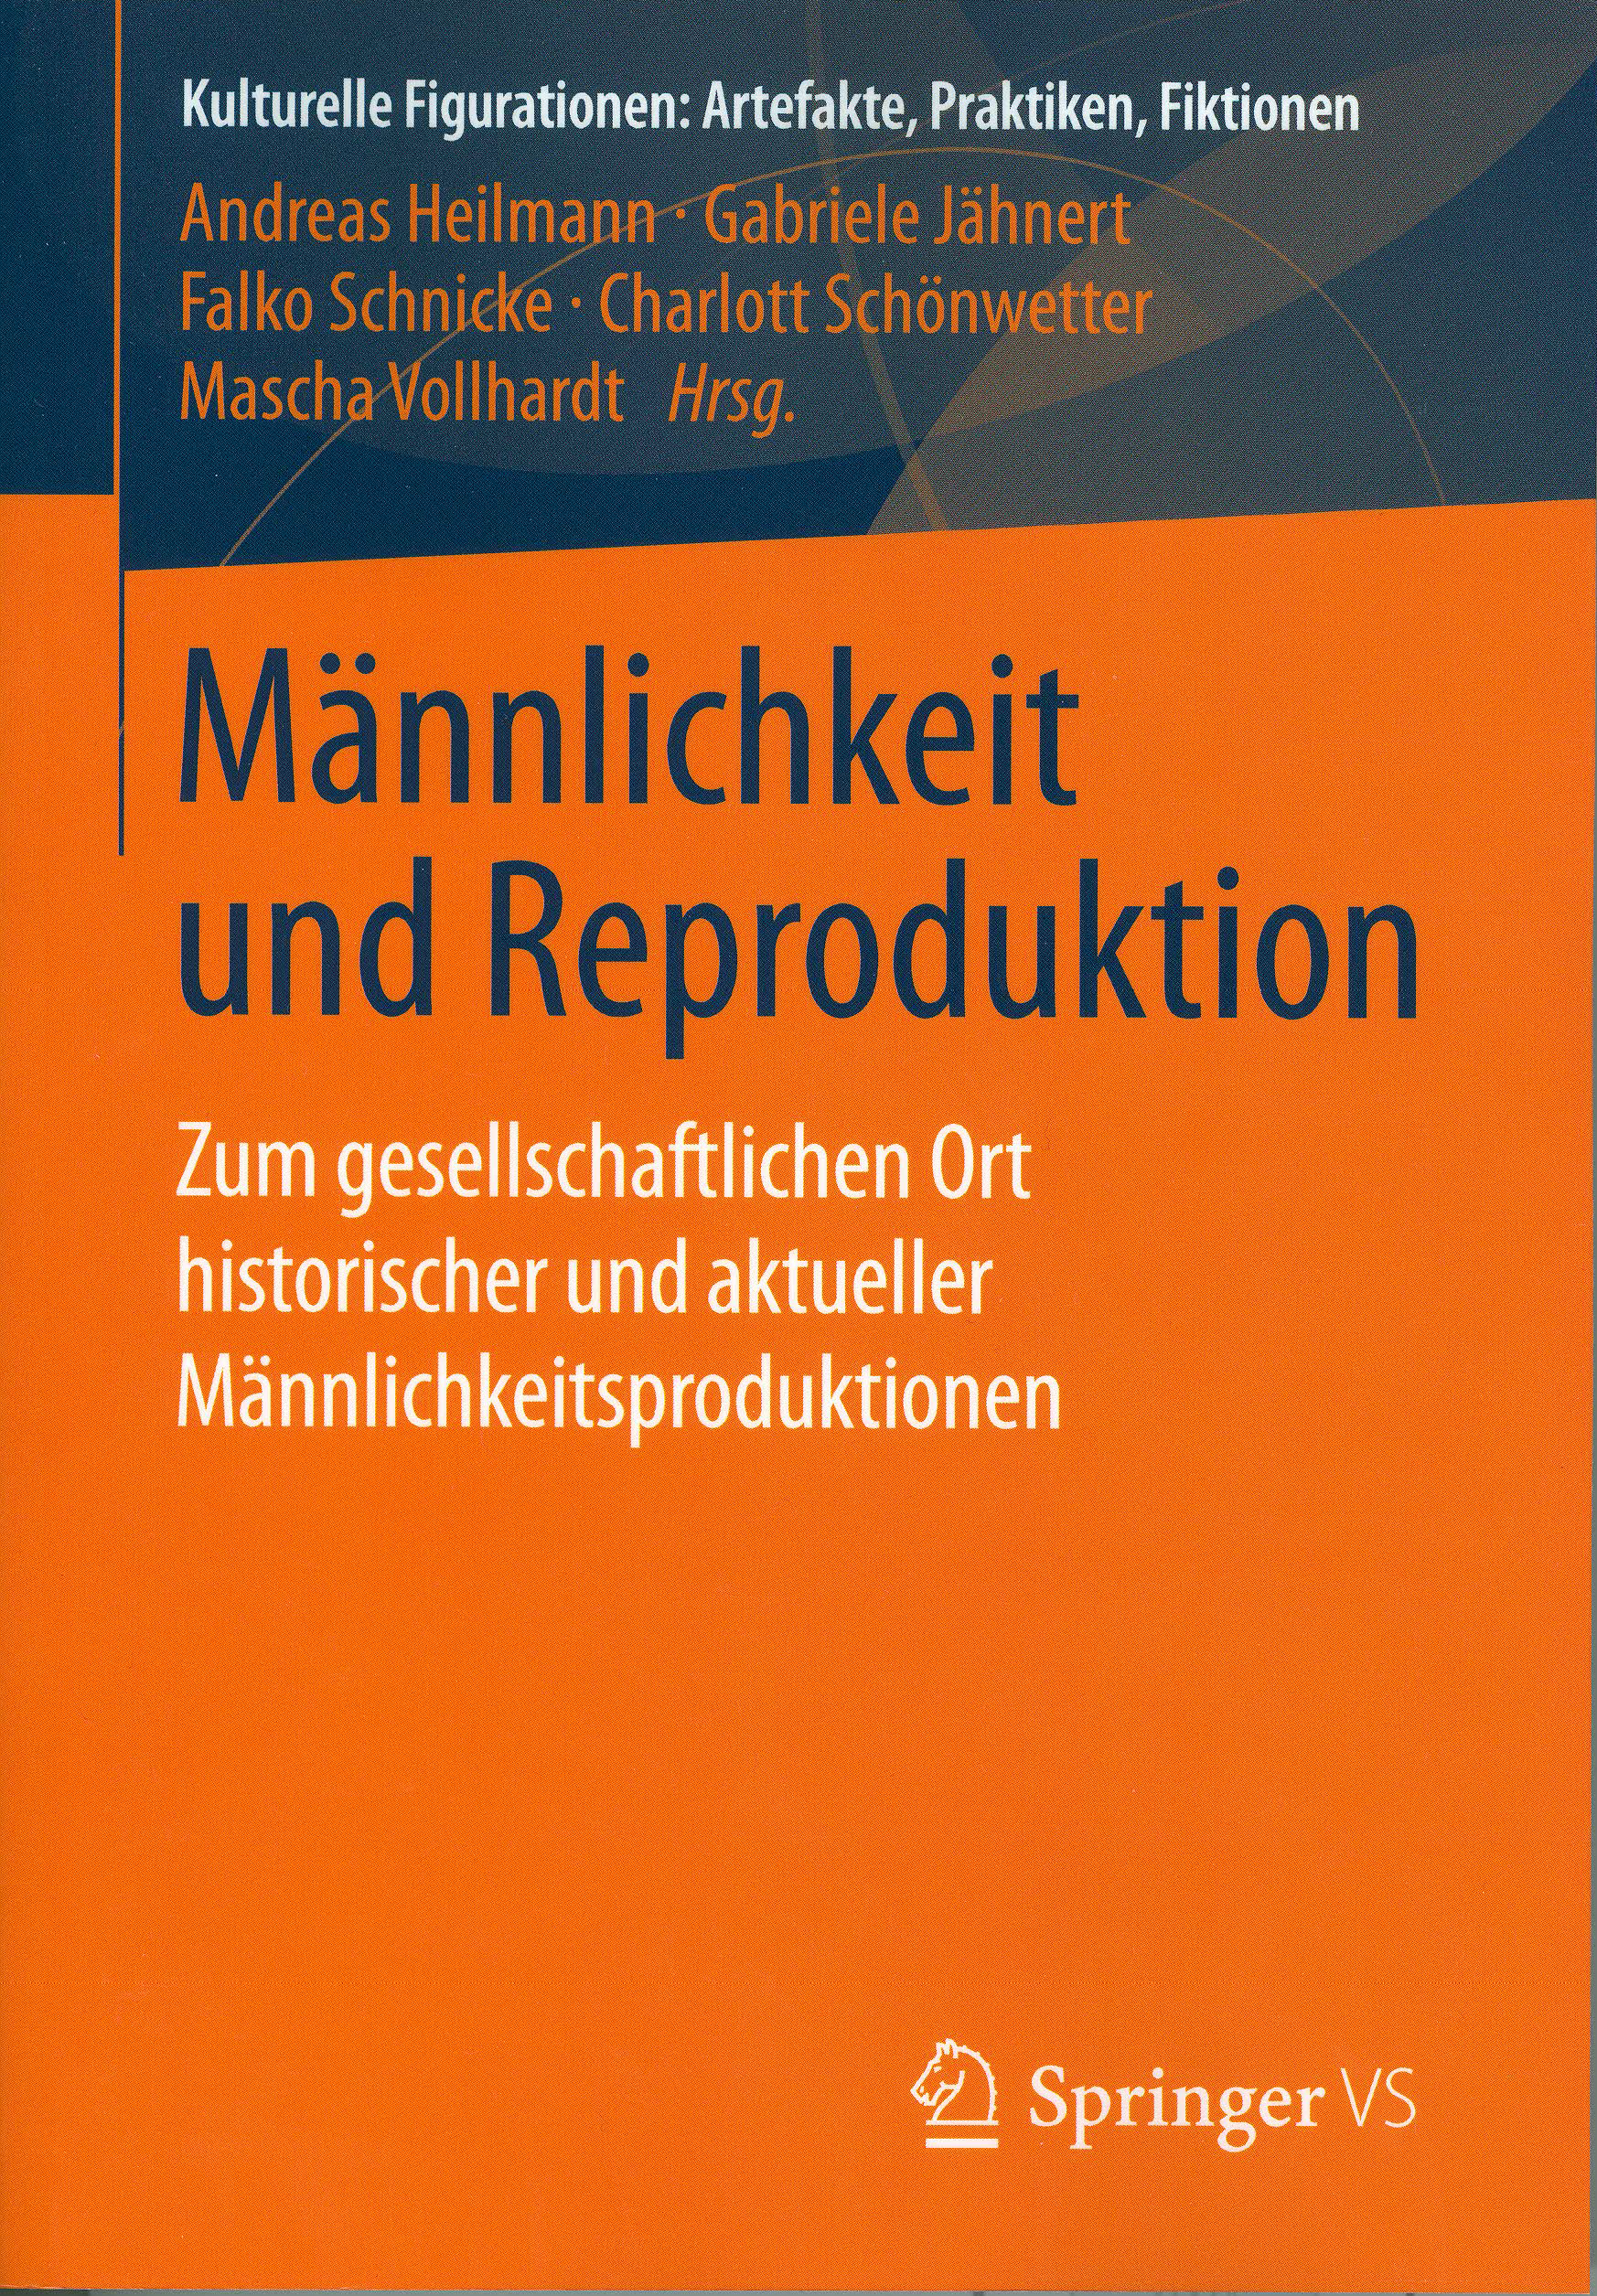 maennlichkeit_und_reproduktion.jpg